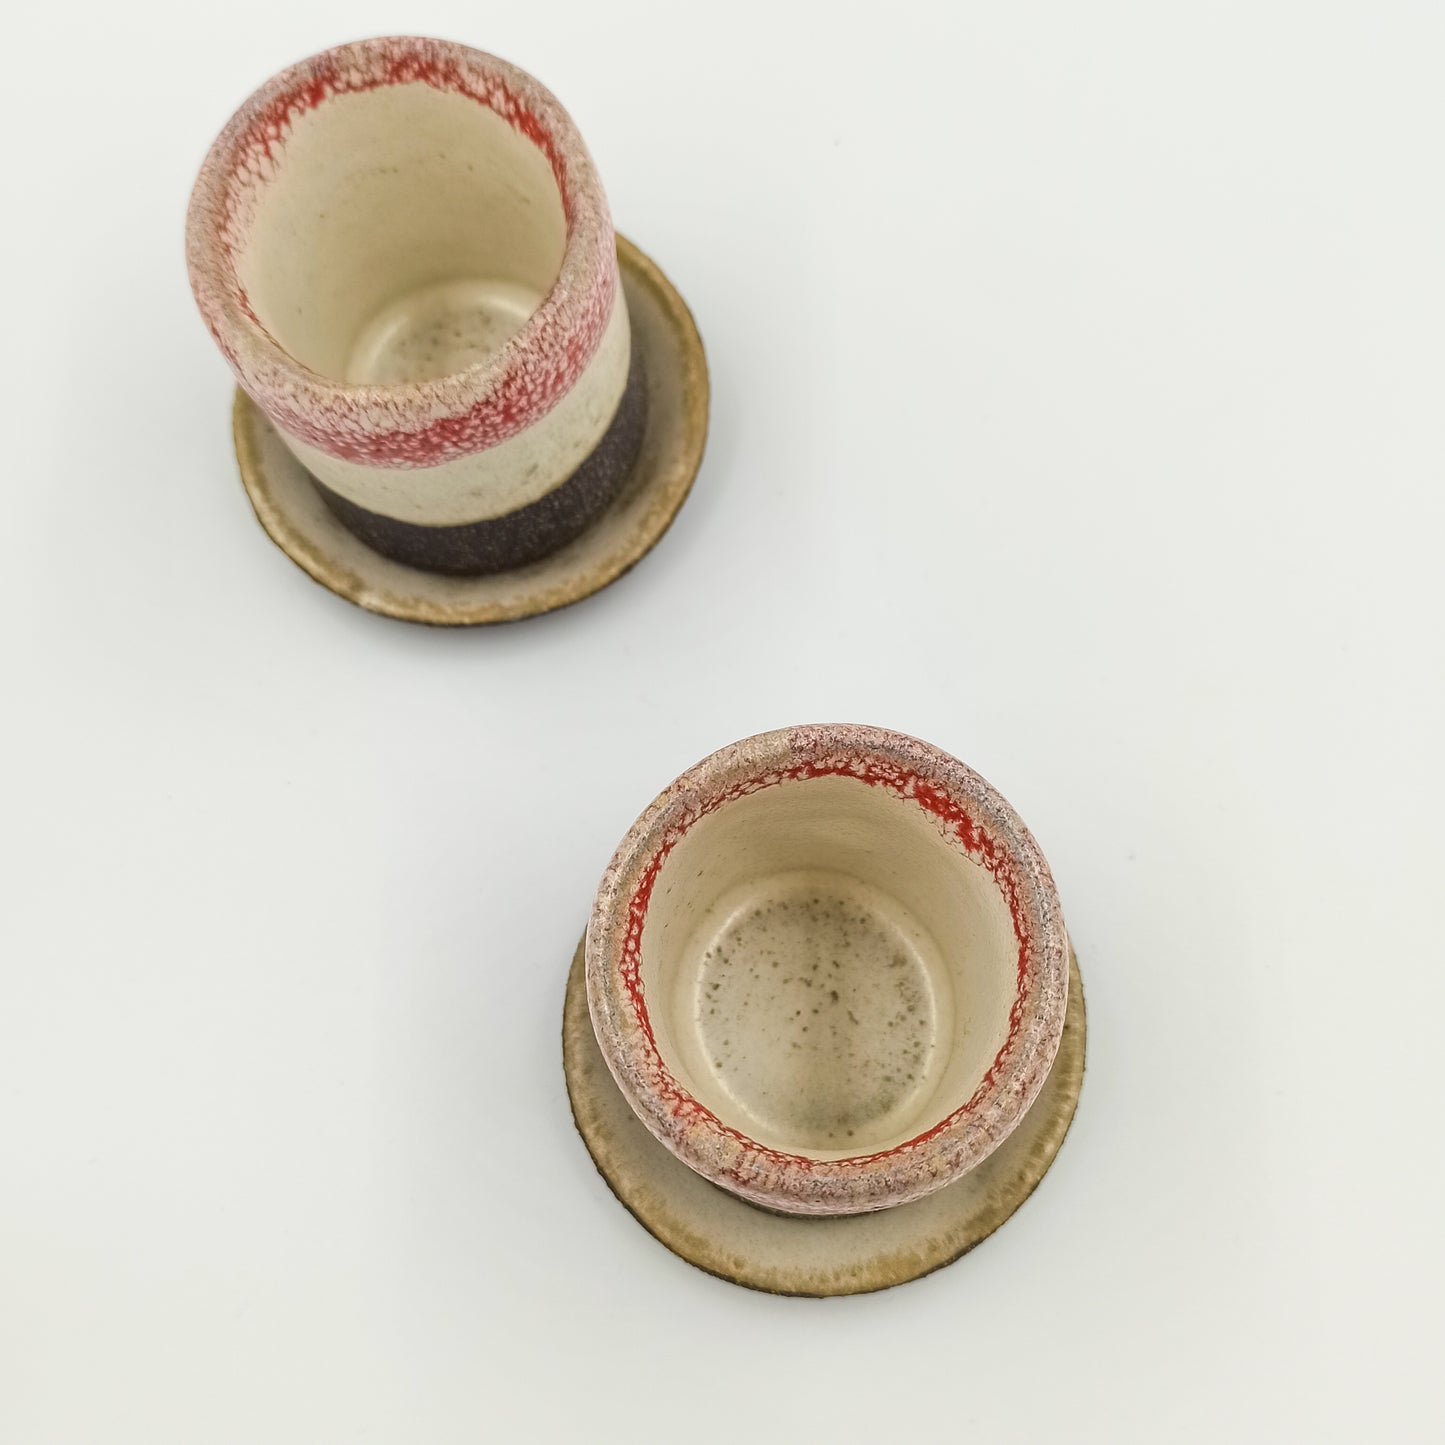 Handbuilt ceramic espresso cup in red